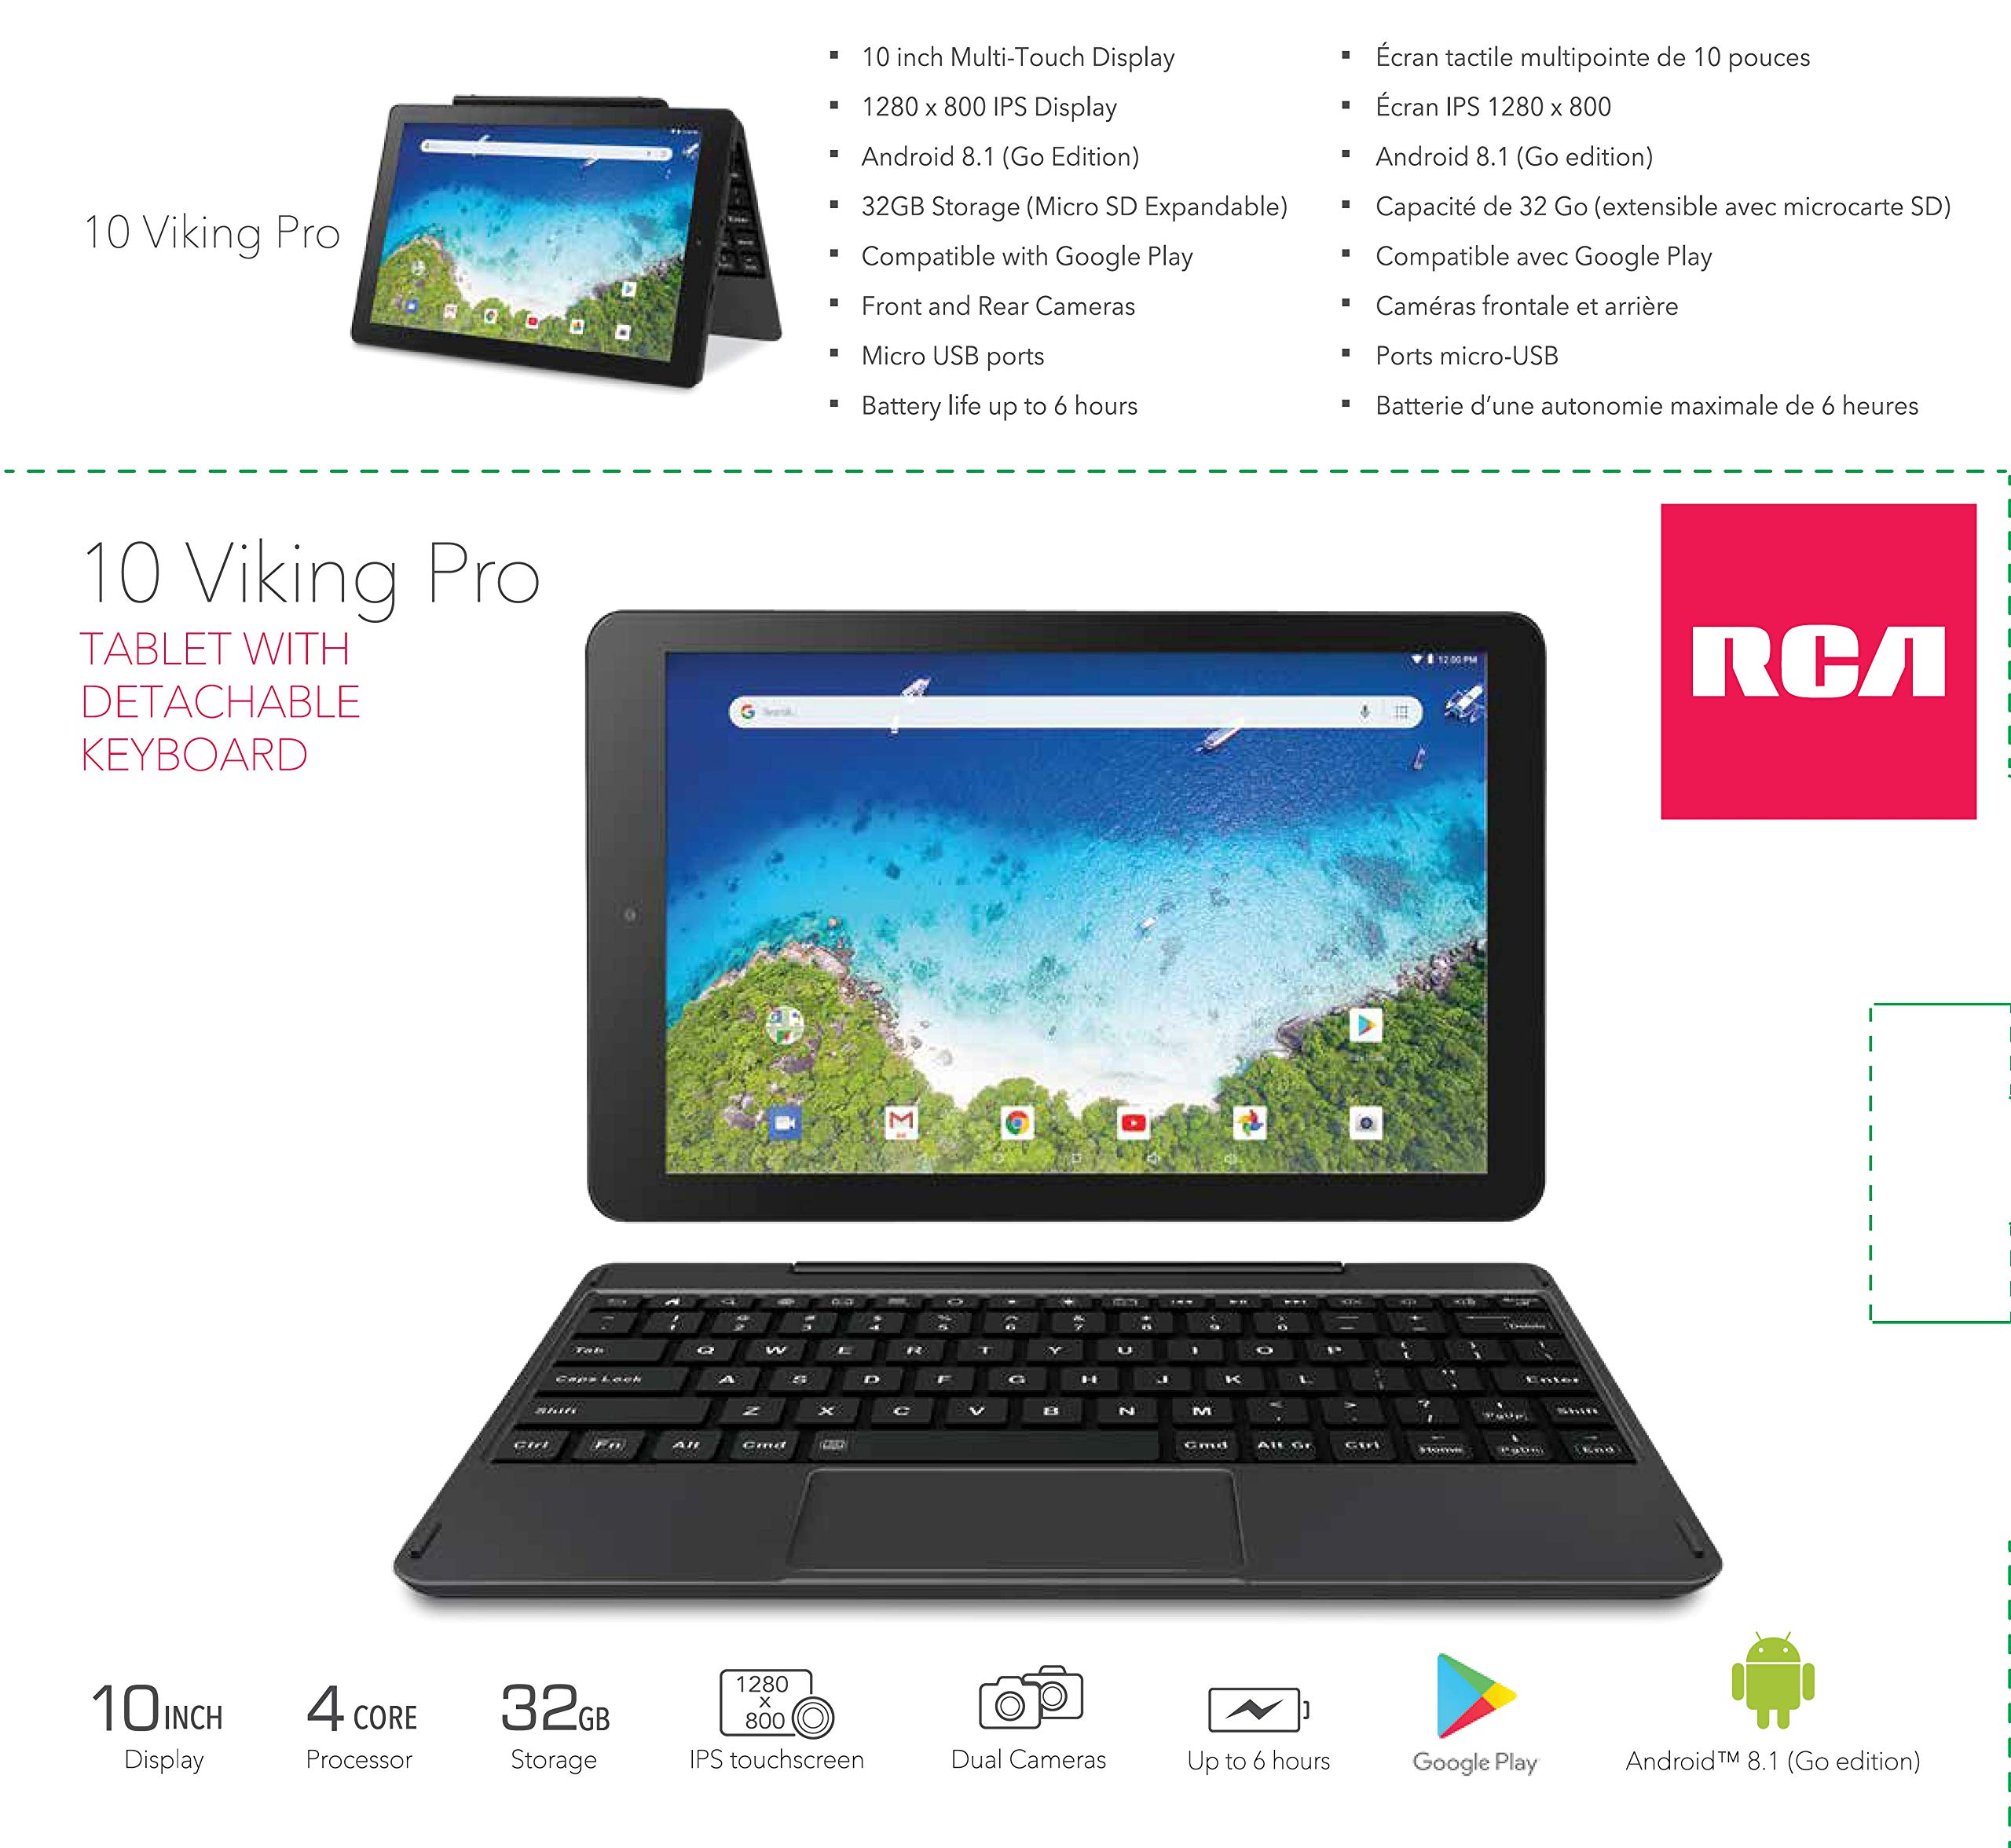 2019 RCA Viking Pro 10.1